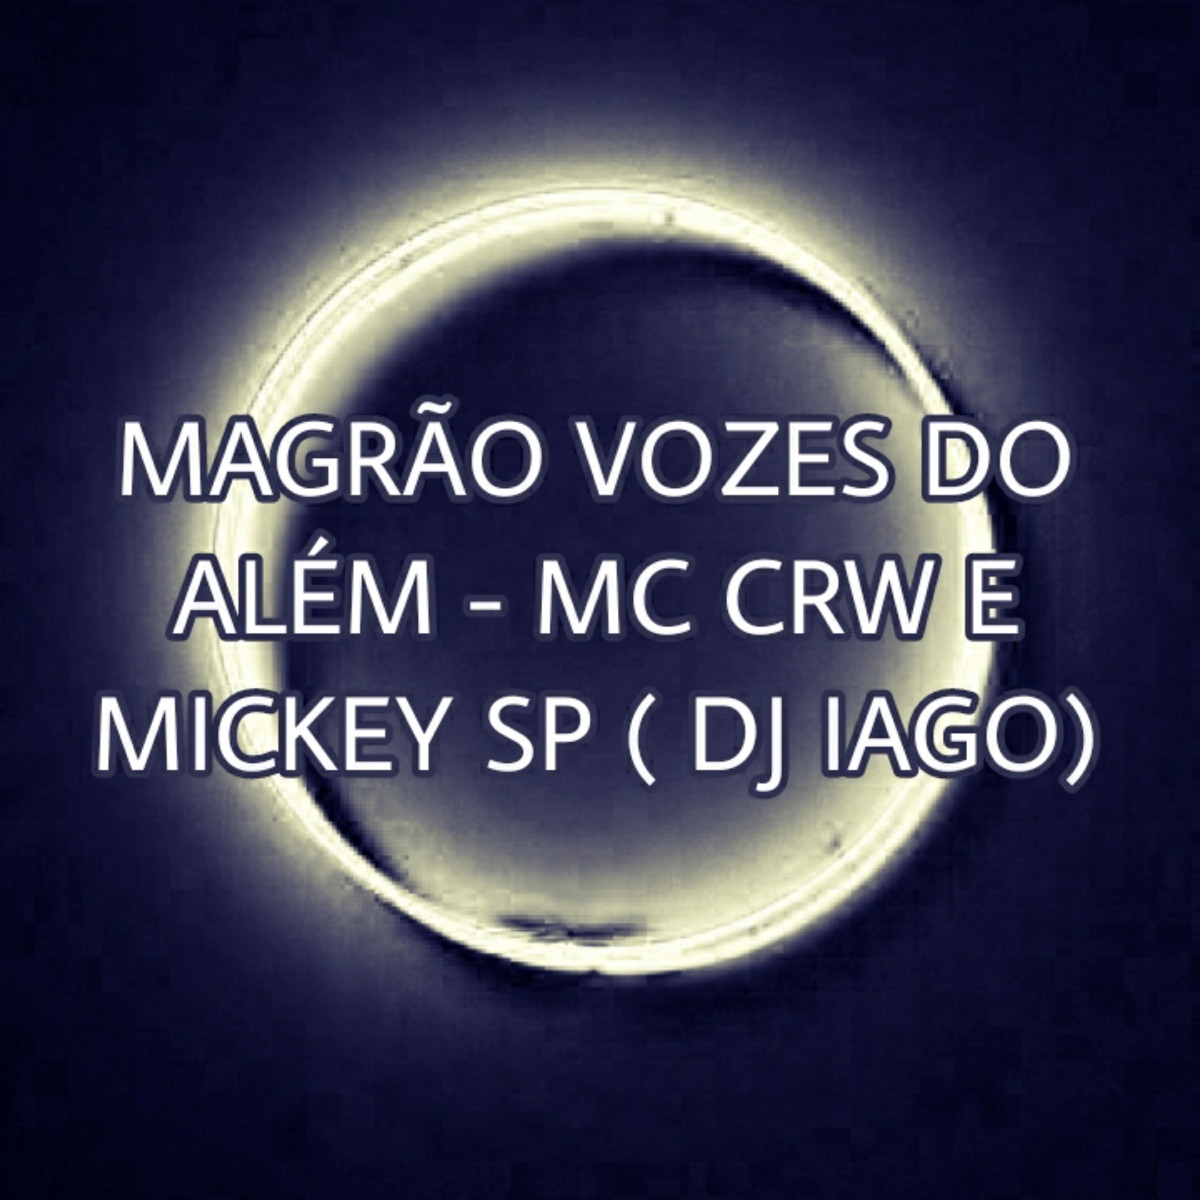 Palmeiras Não Tem Mundial - Single - Album by Mc Mickey Sp & DJ